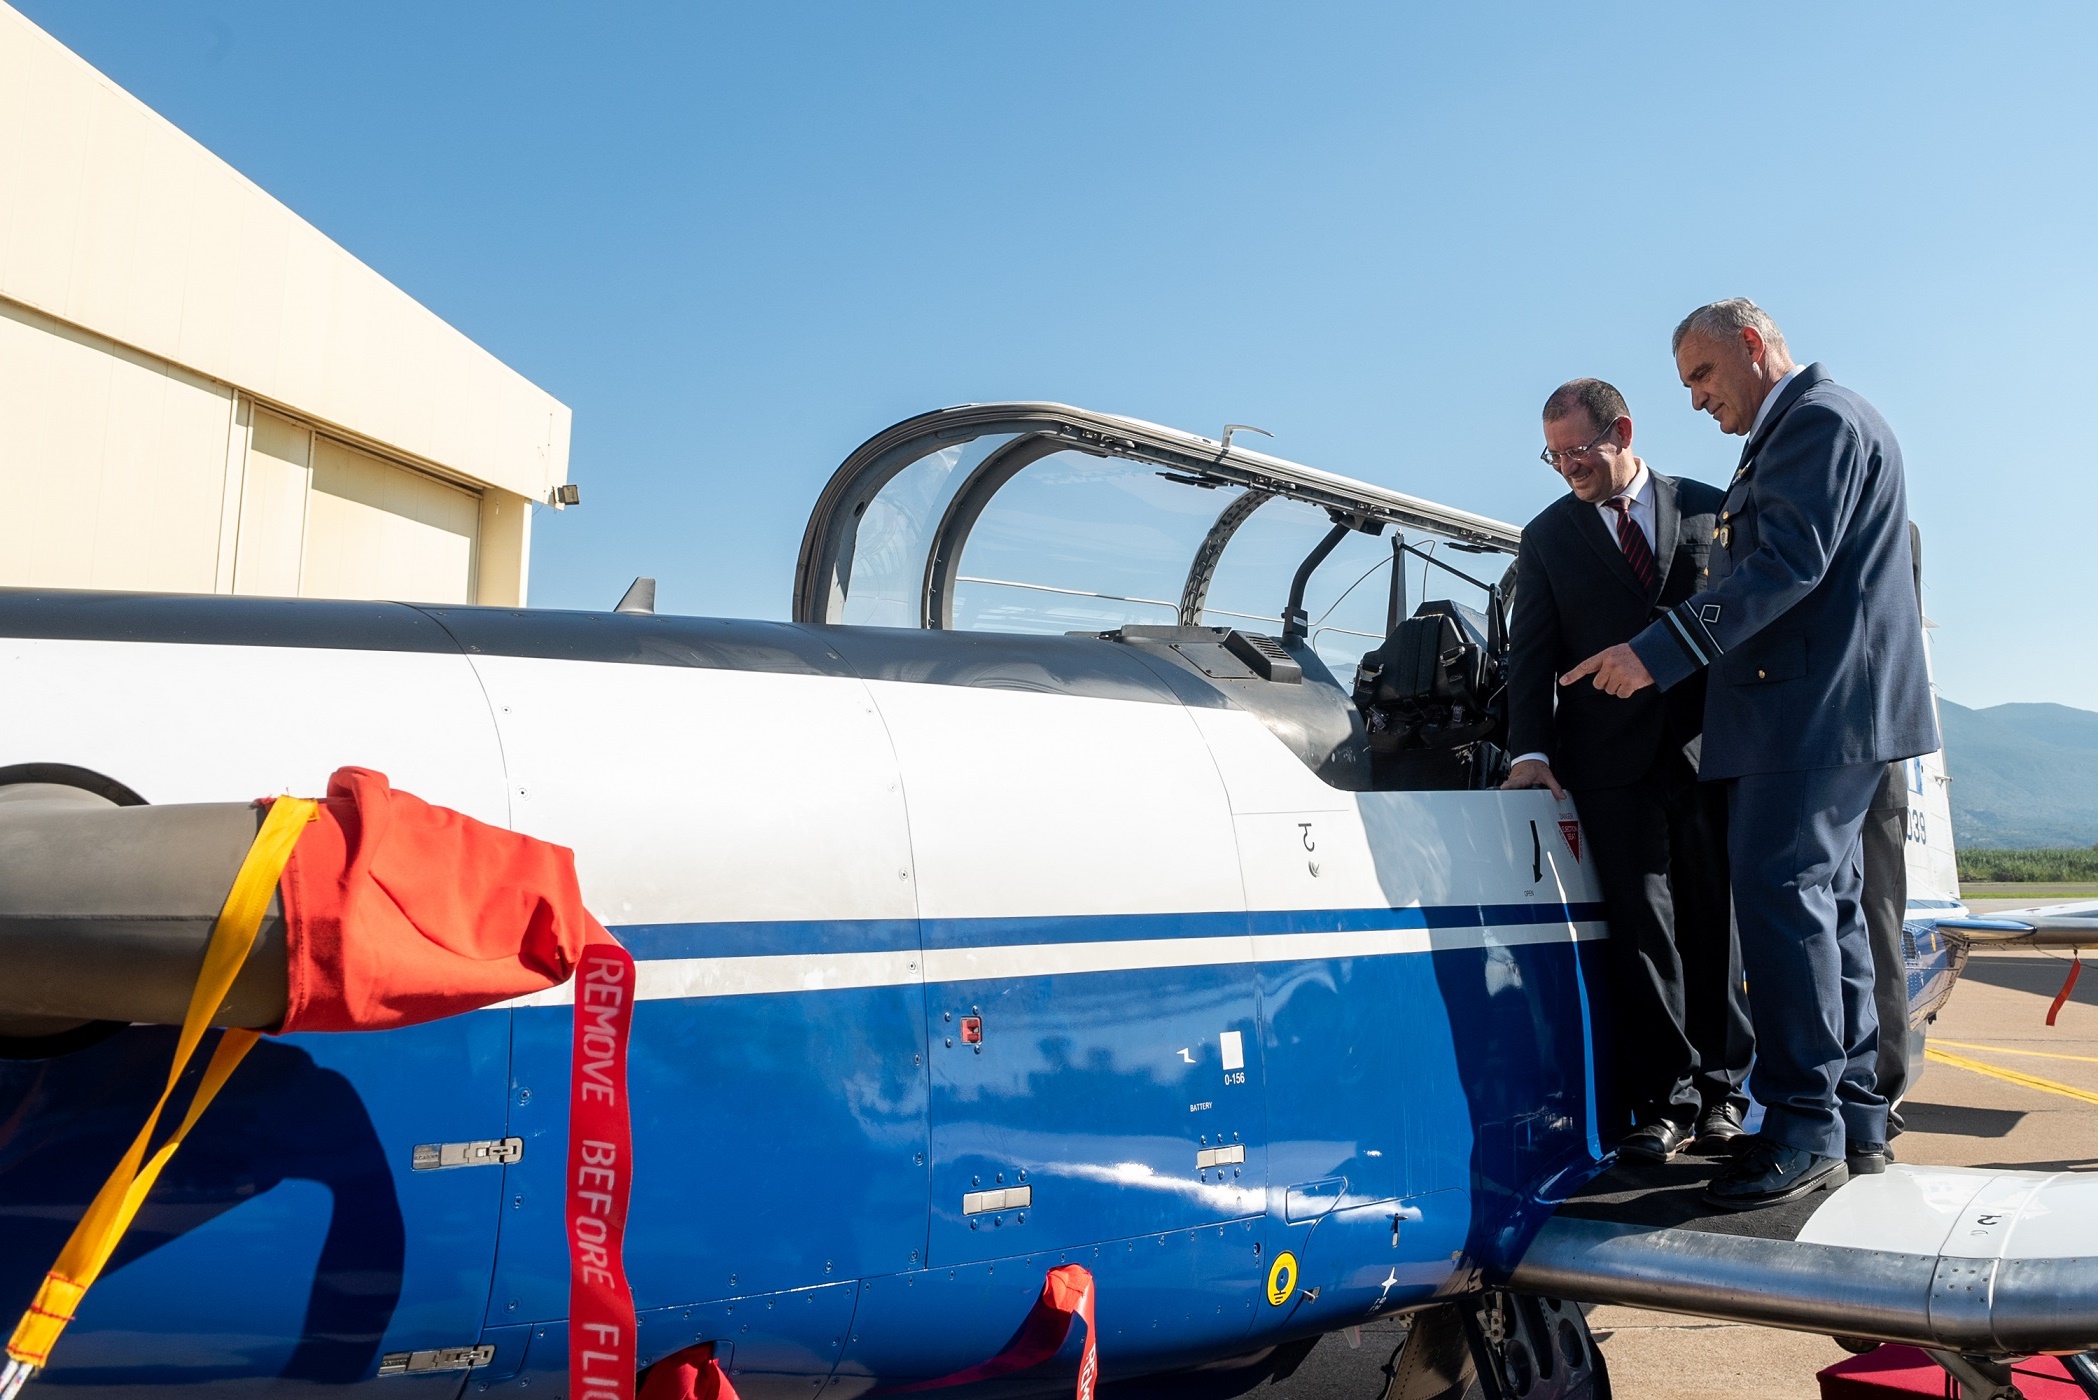 επίσκεψη εκπροσώπων των υπουργείων άμυνας ελλάδας και ισραήλ στο διεθνές κέντρο εκπαίδευσης πιλότων στην 120 πεα καλαμάτας 12